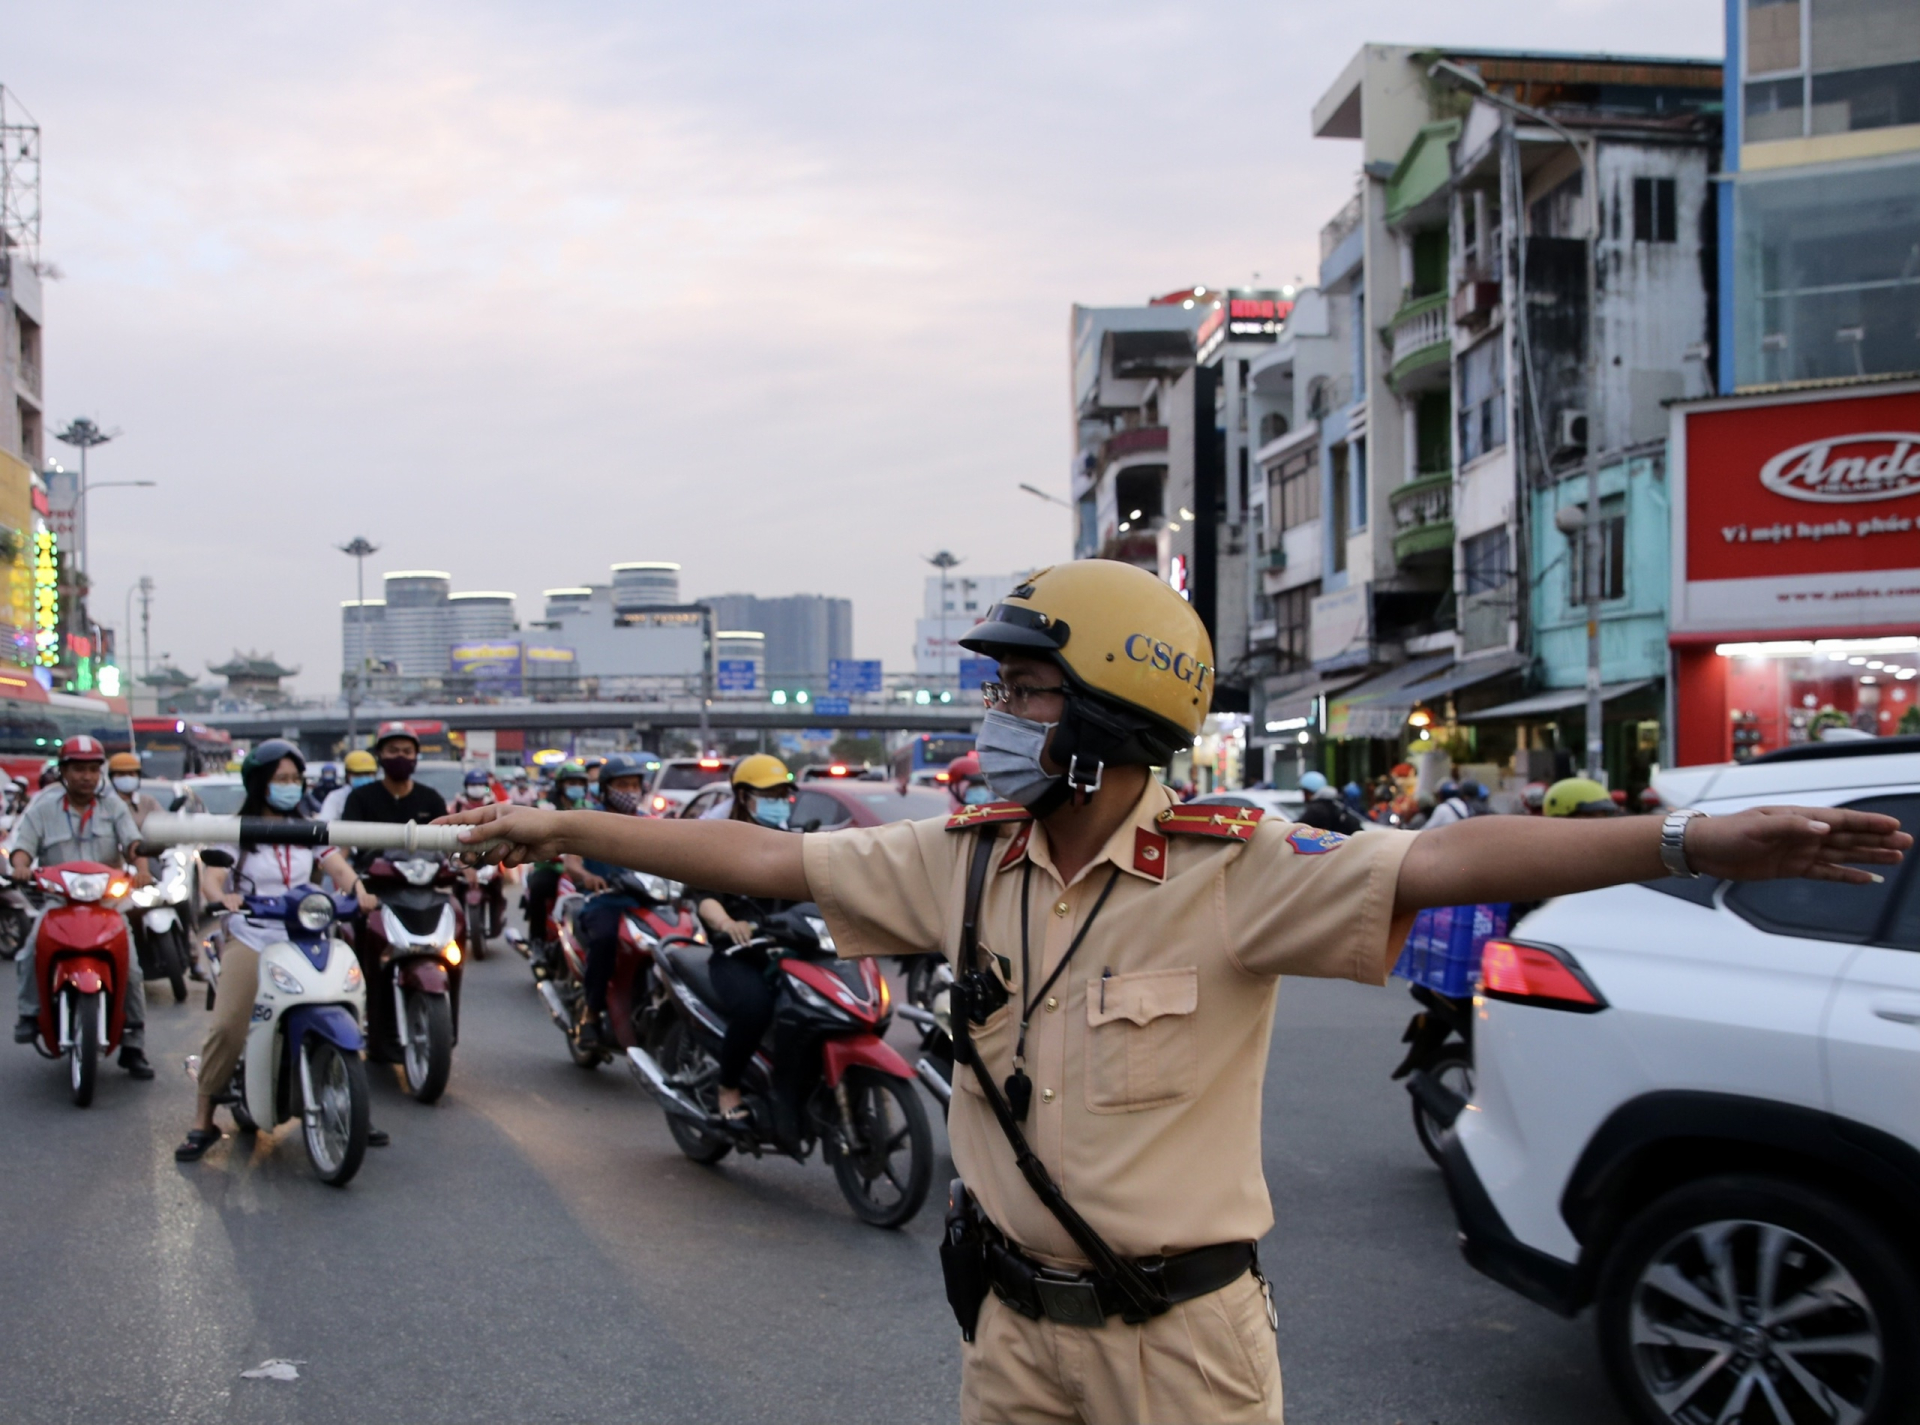 Khi đi đường, hiệu lệnh của Cảnh sát giao thông trái với biển báo, đèn tín hiệu thì nên tuân thủ theo bên nào? - ảnh 1